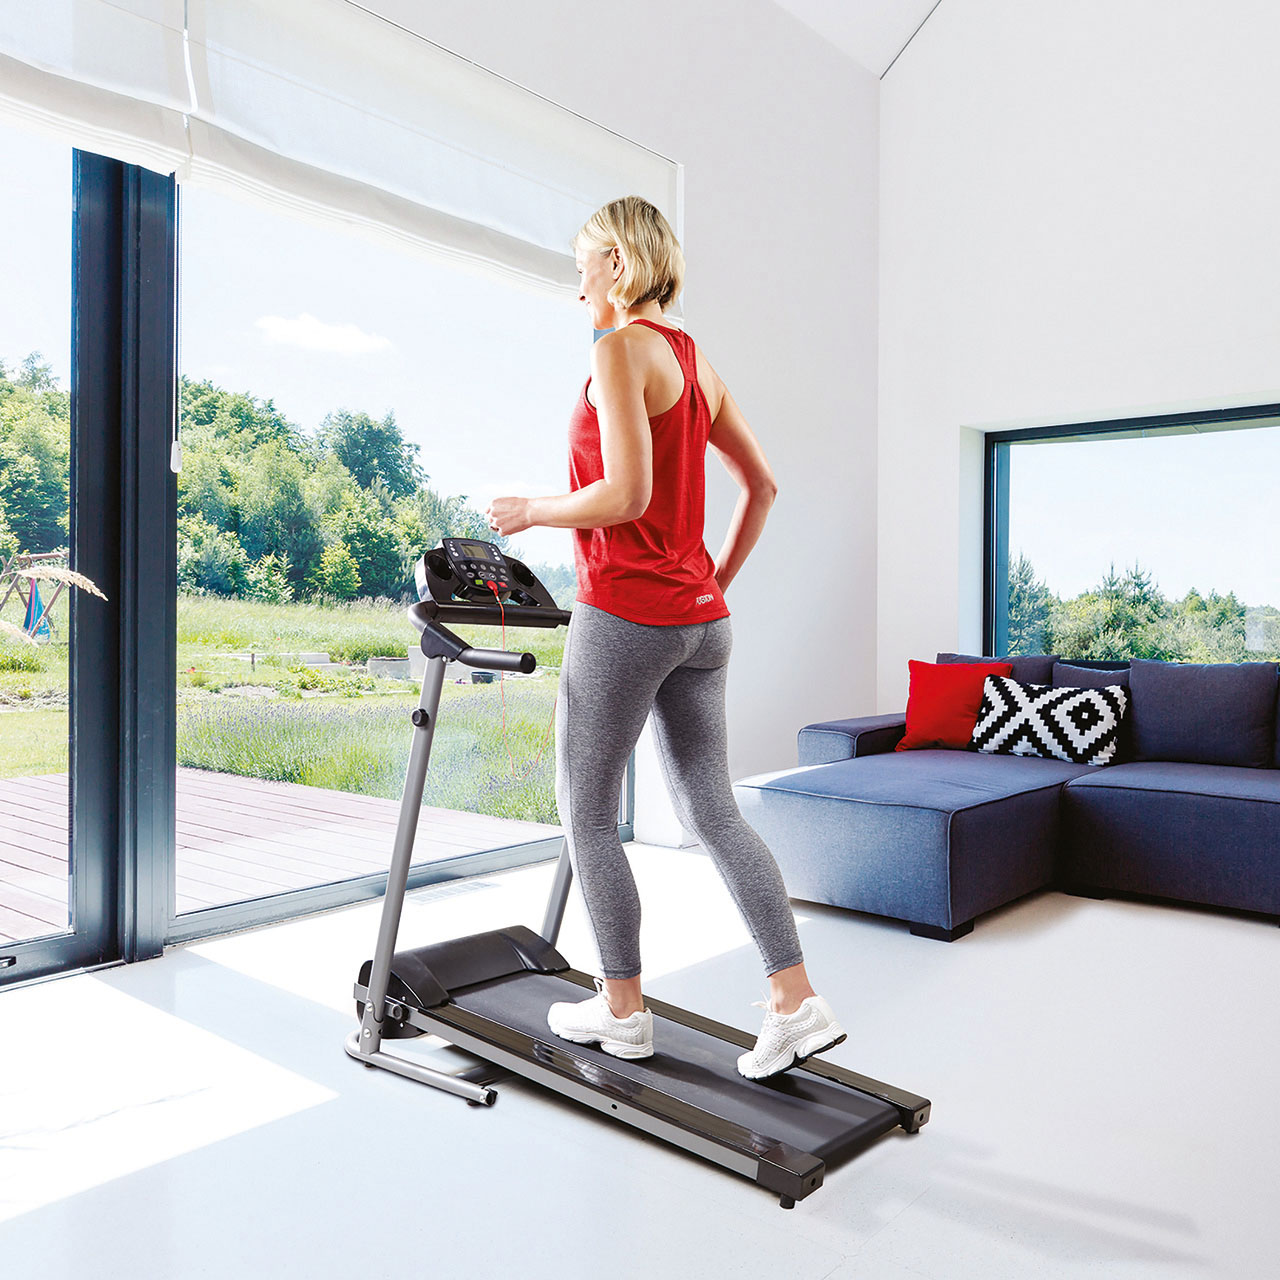 Neostar® Health Motorised Folding Treadmill